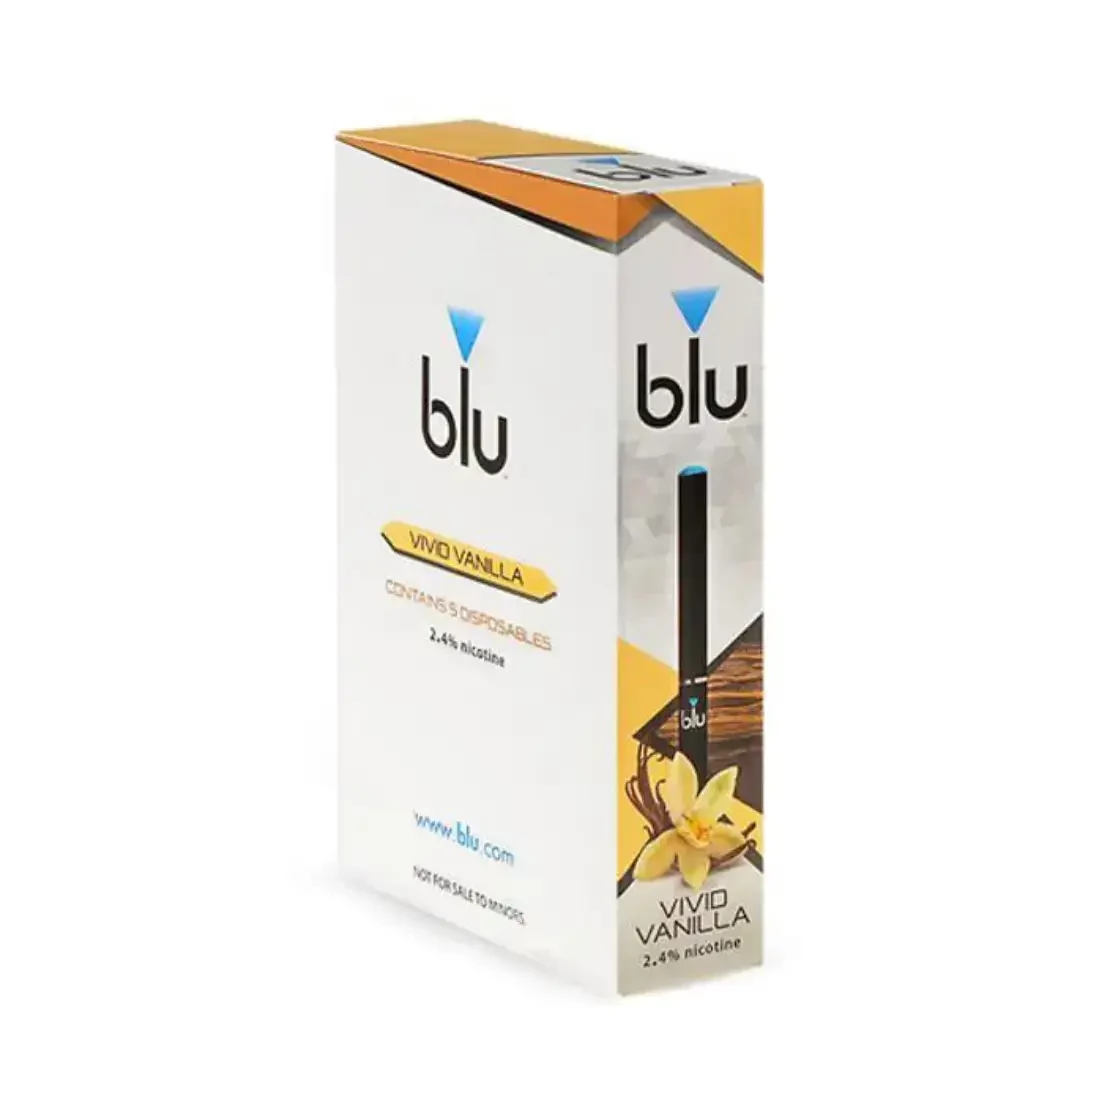 custom-design-e-cigarette-packaging-boxes